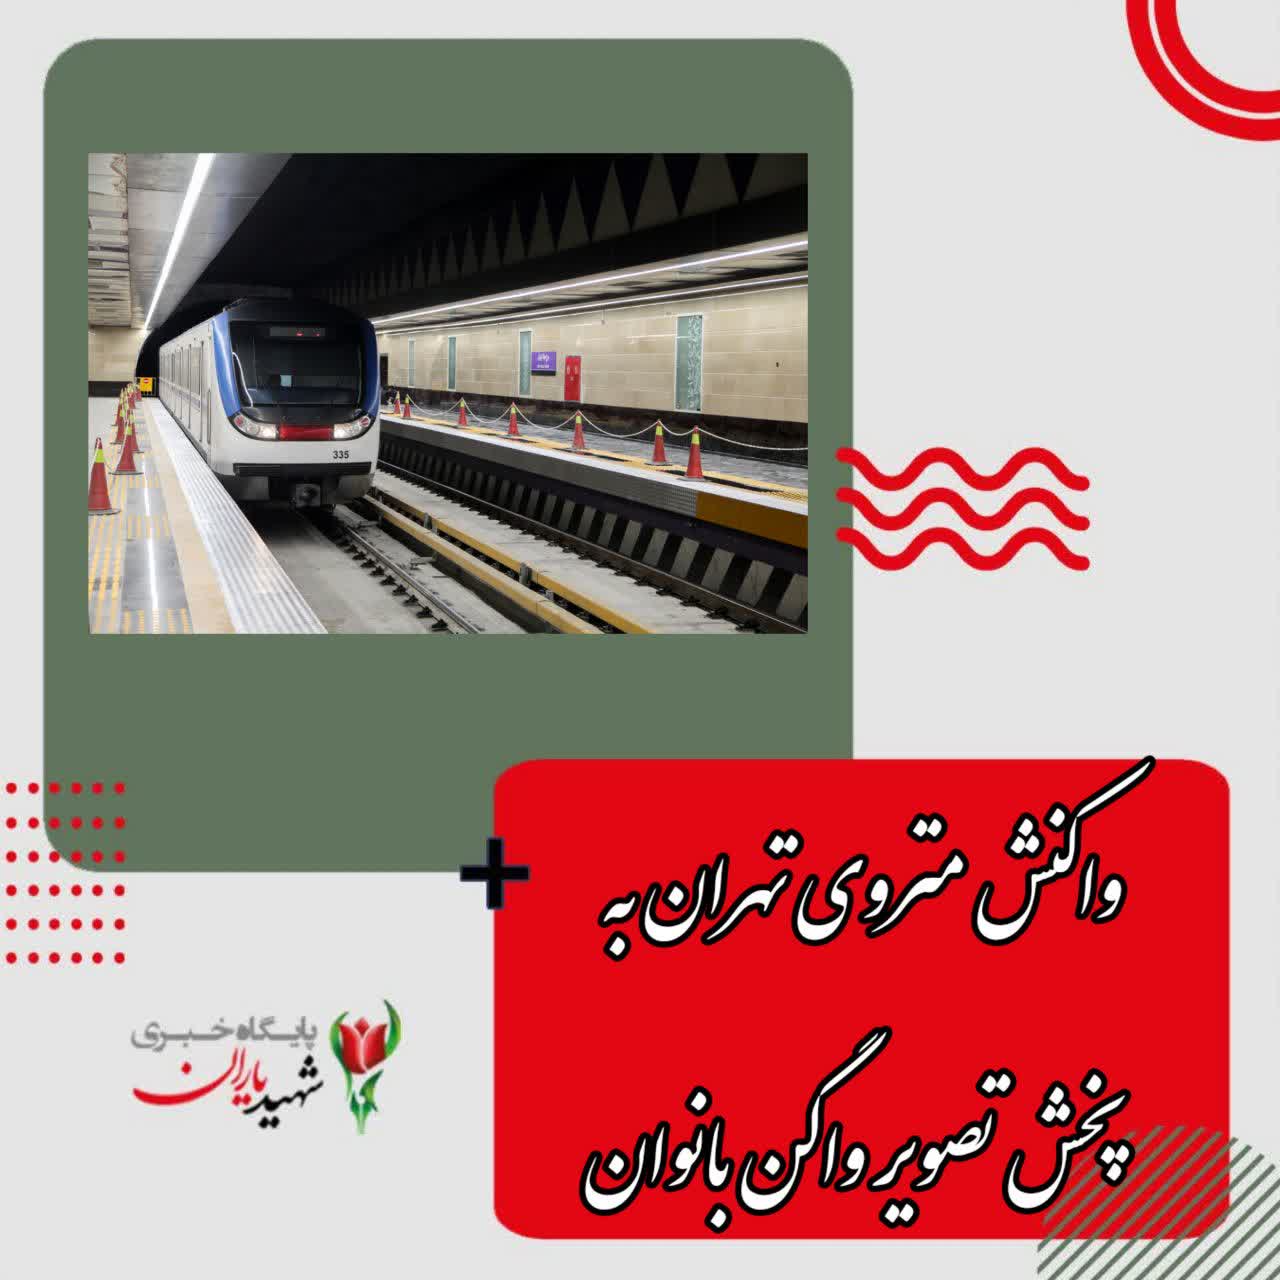 واکنش متروی تهران به پخش تصویر واگن بانوان